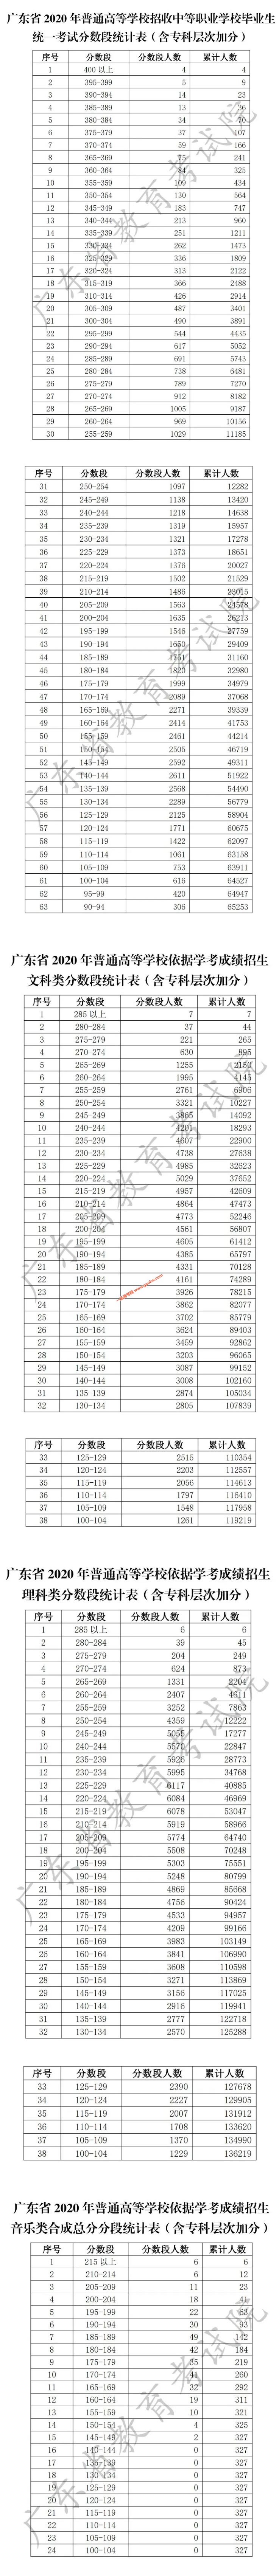 广东省2020年普通高等学校招收中等职业学校毕业生统一考试分数段统计表（含专科层次加分）